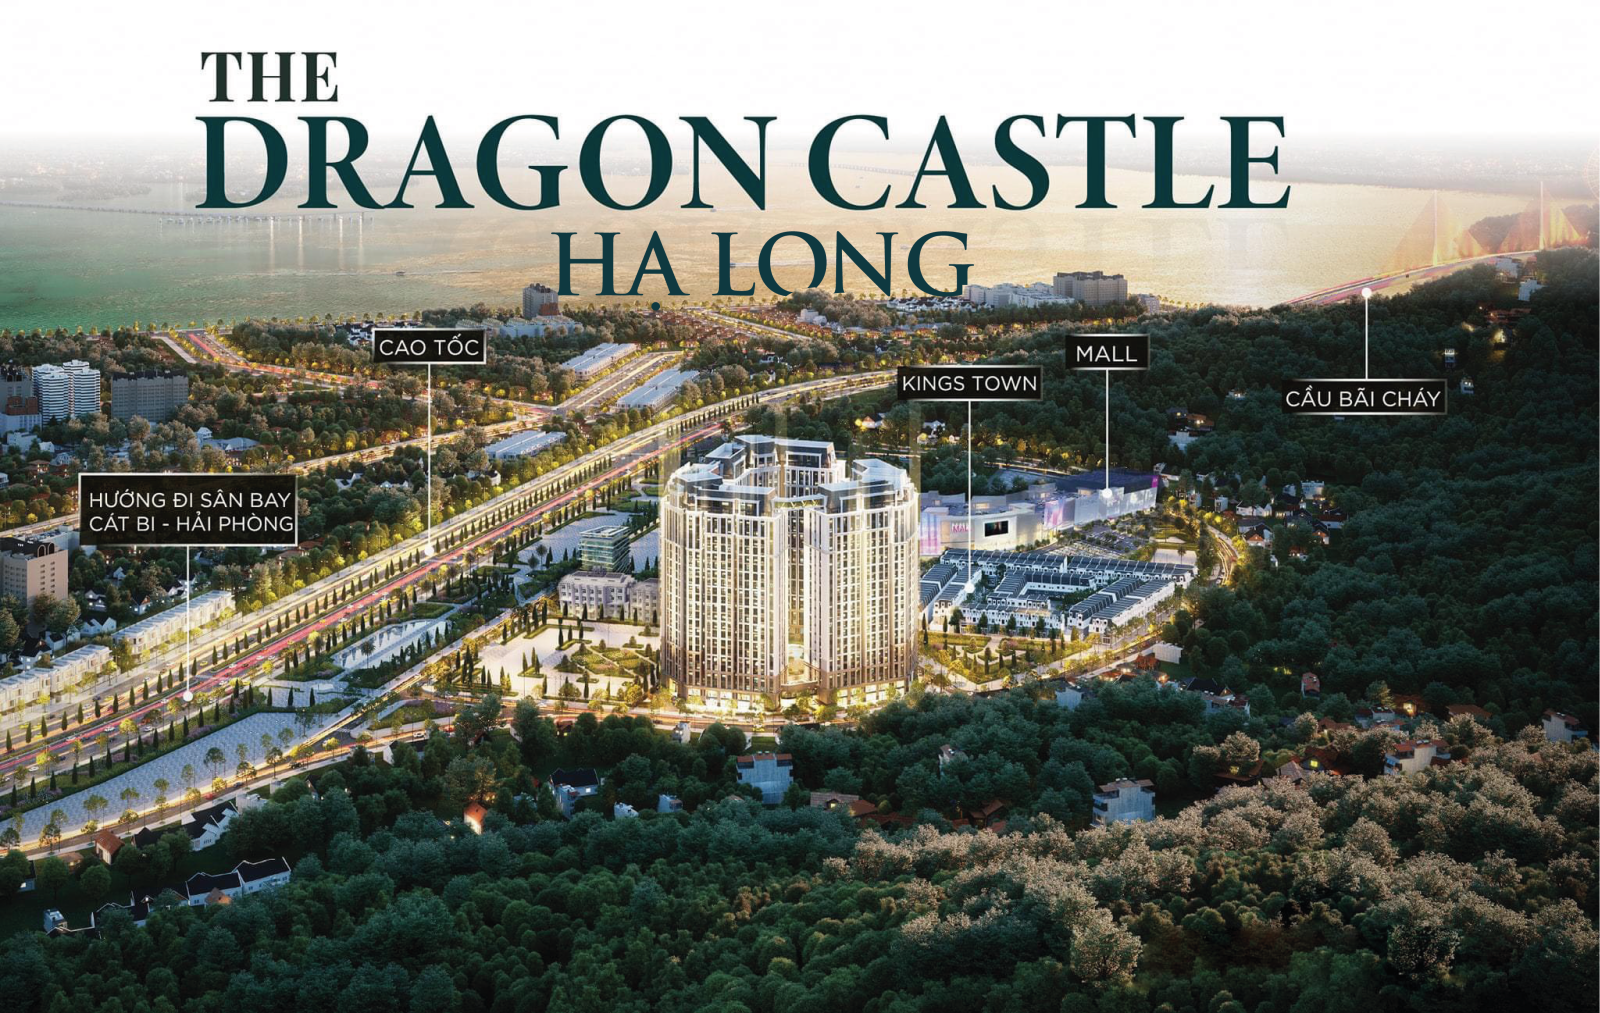 Căn hộ The Dragon Castle Hạ Long sở hữu view đắt giá, các cư dân đều có thể thưởng ngoạn cảnh quan đặc sắc của vịnh Hạ Long.